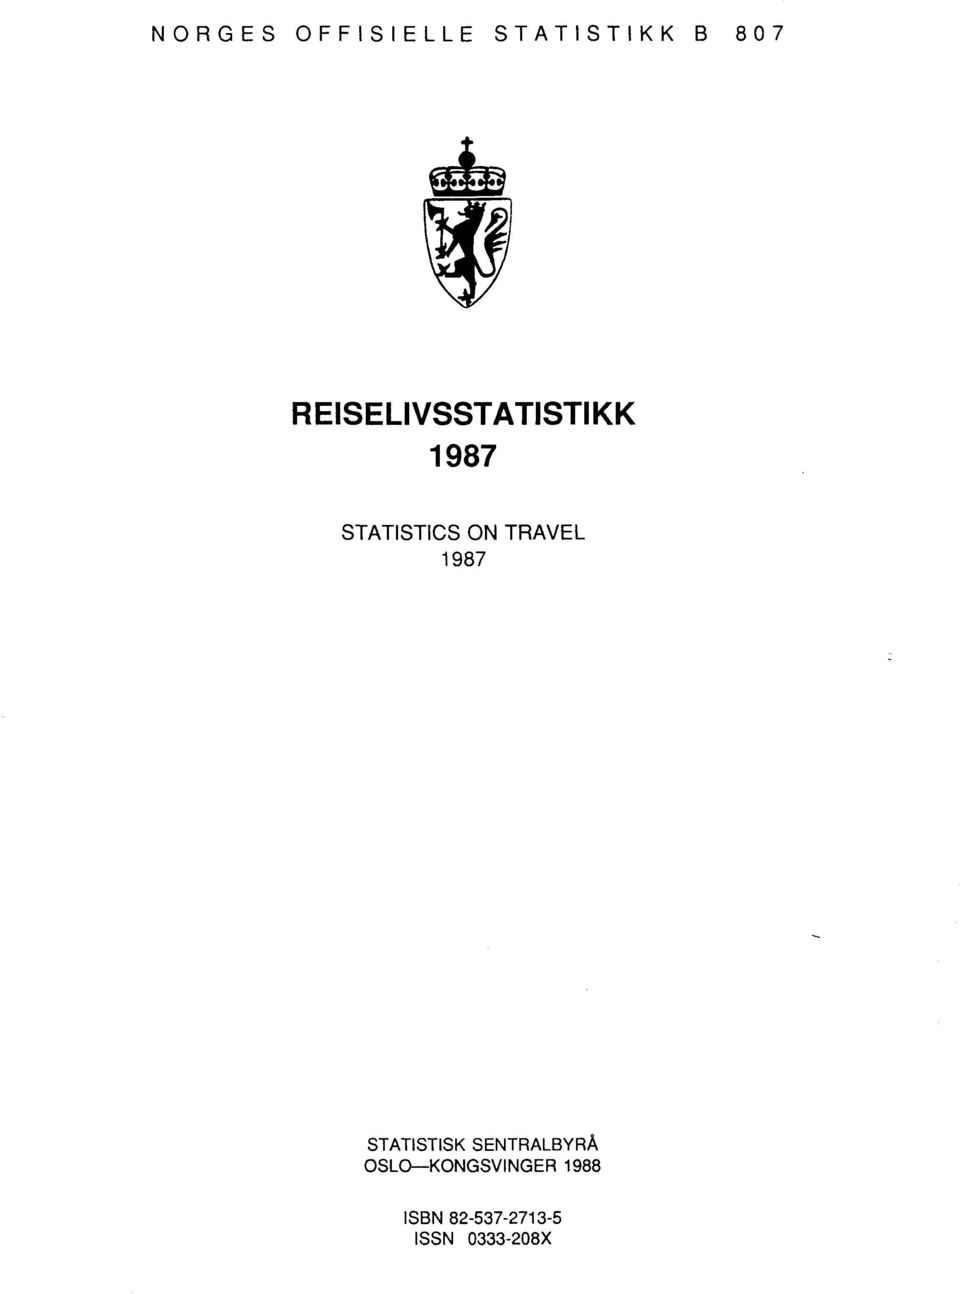 TRAVEL 1987 STATISTISK SENTRALBYRÅ